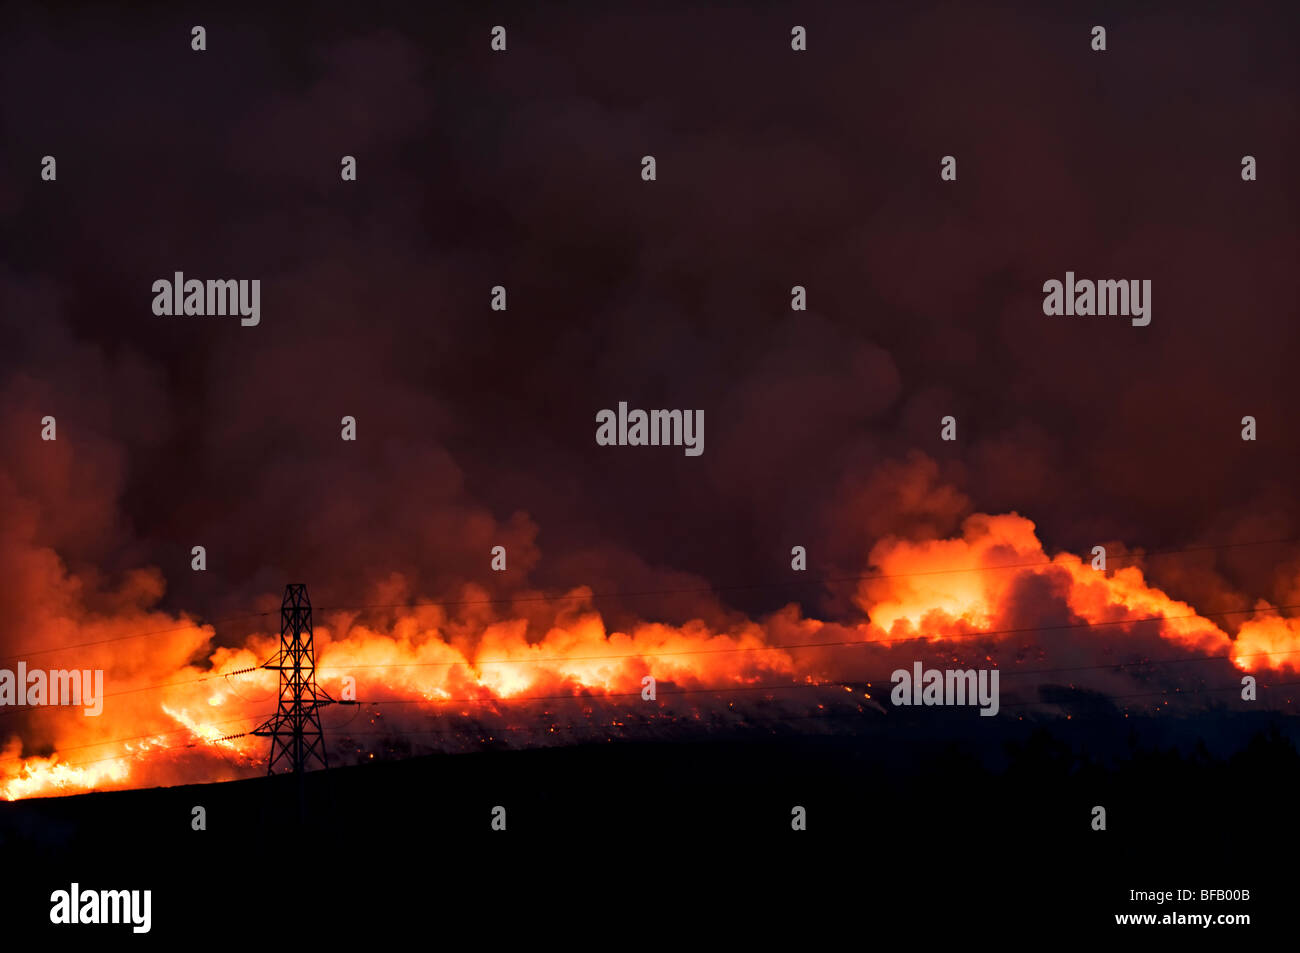 Un feu de broussailles intense sur les collines près de l'A836 entre Lairg et Bonar Bridge en Ecosse prises au crépuscule Banque D'Images